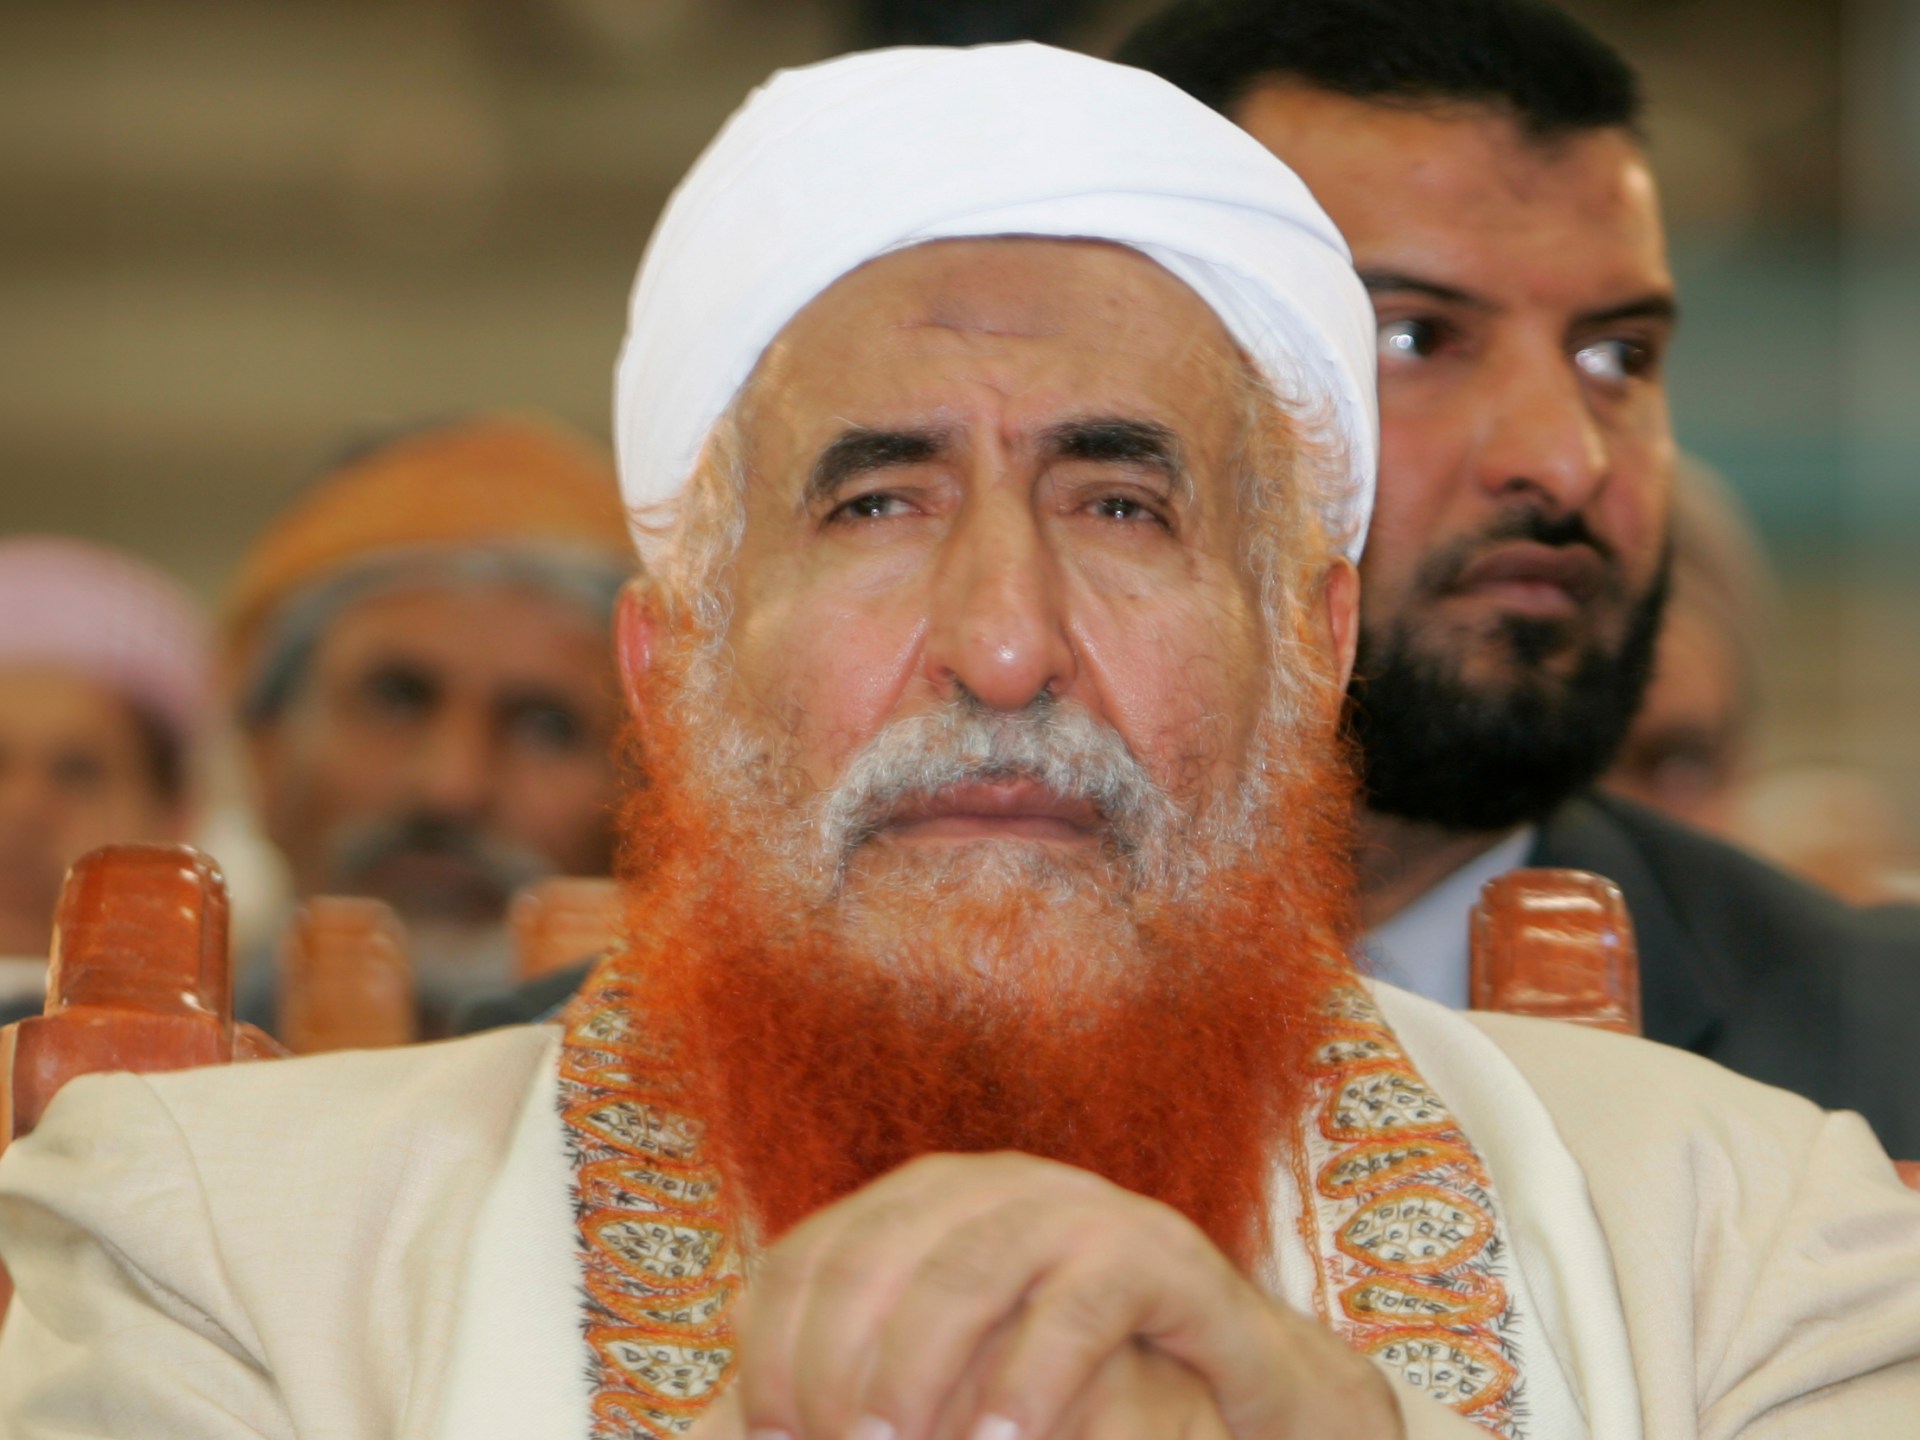 وفاة العلامة اليمني الشيخ عبد المجيد الزنداني عن 82 عاما | أخبار – البوكس نيوز